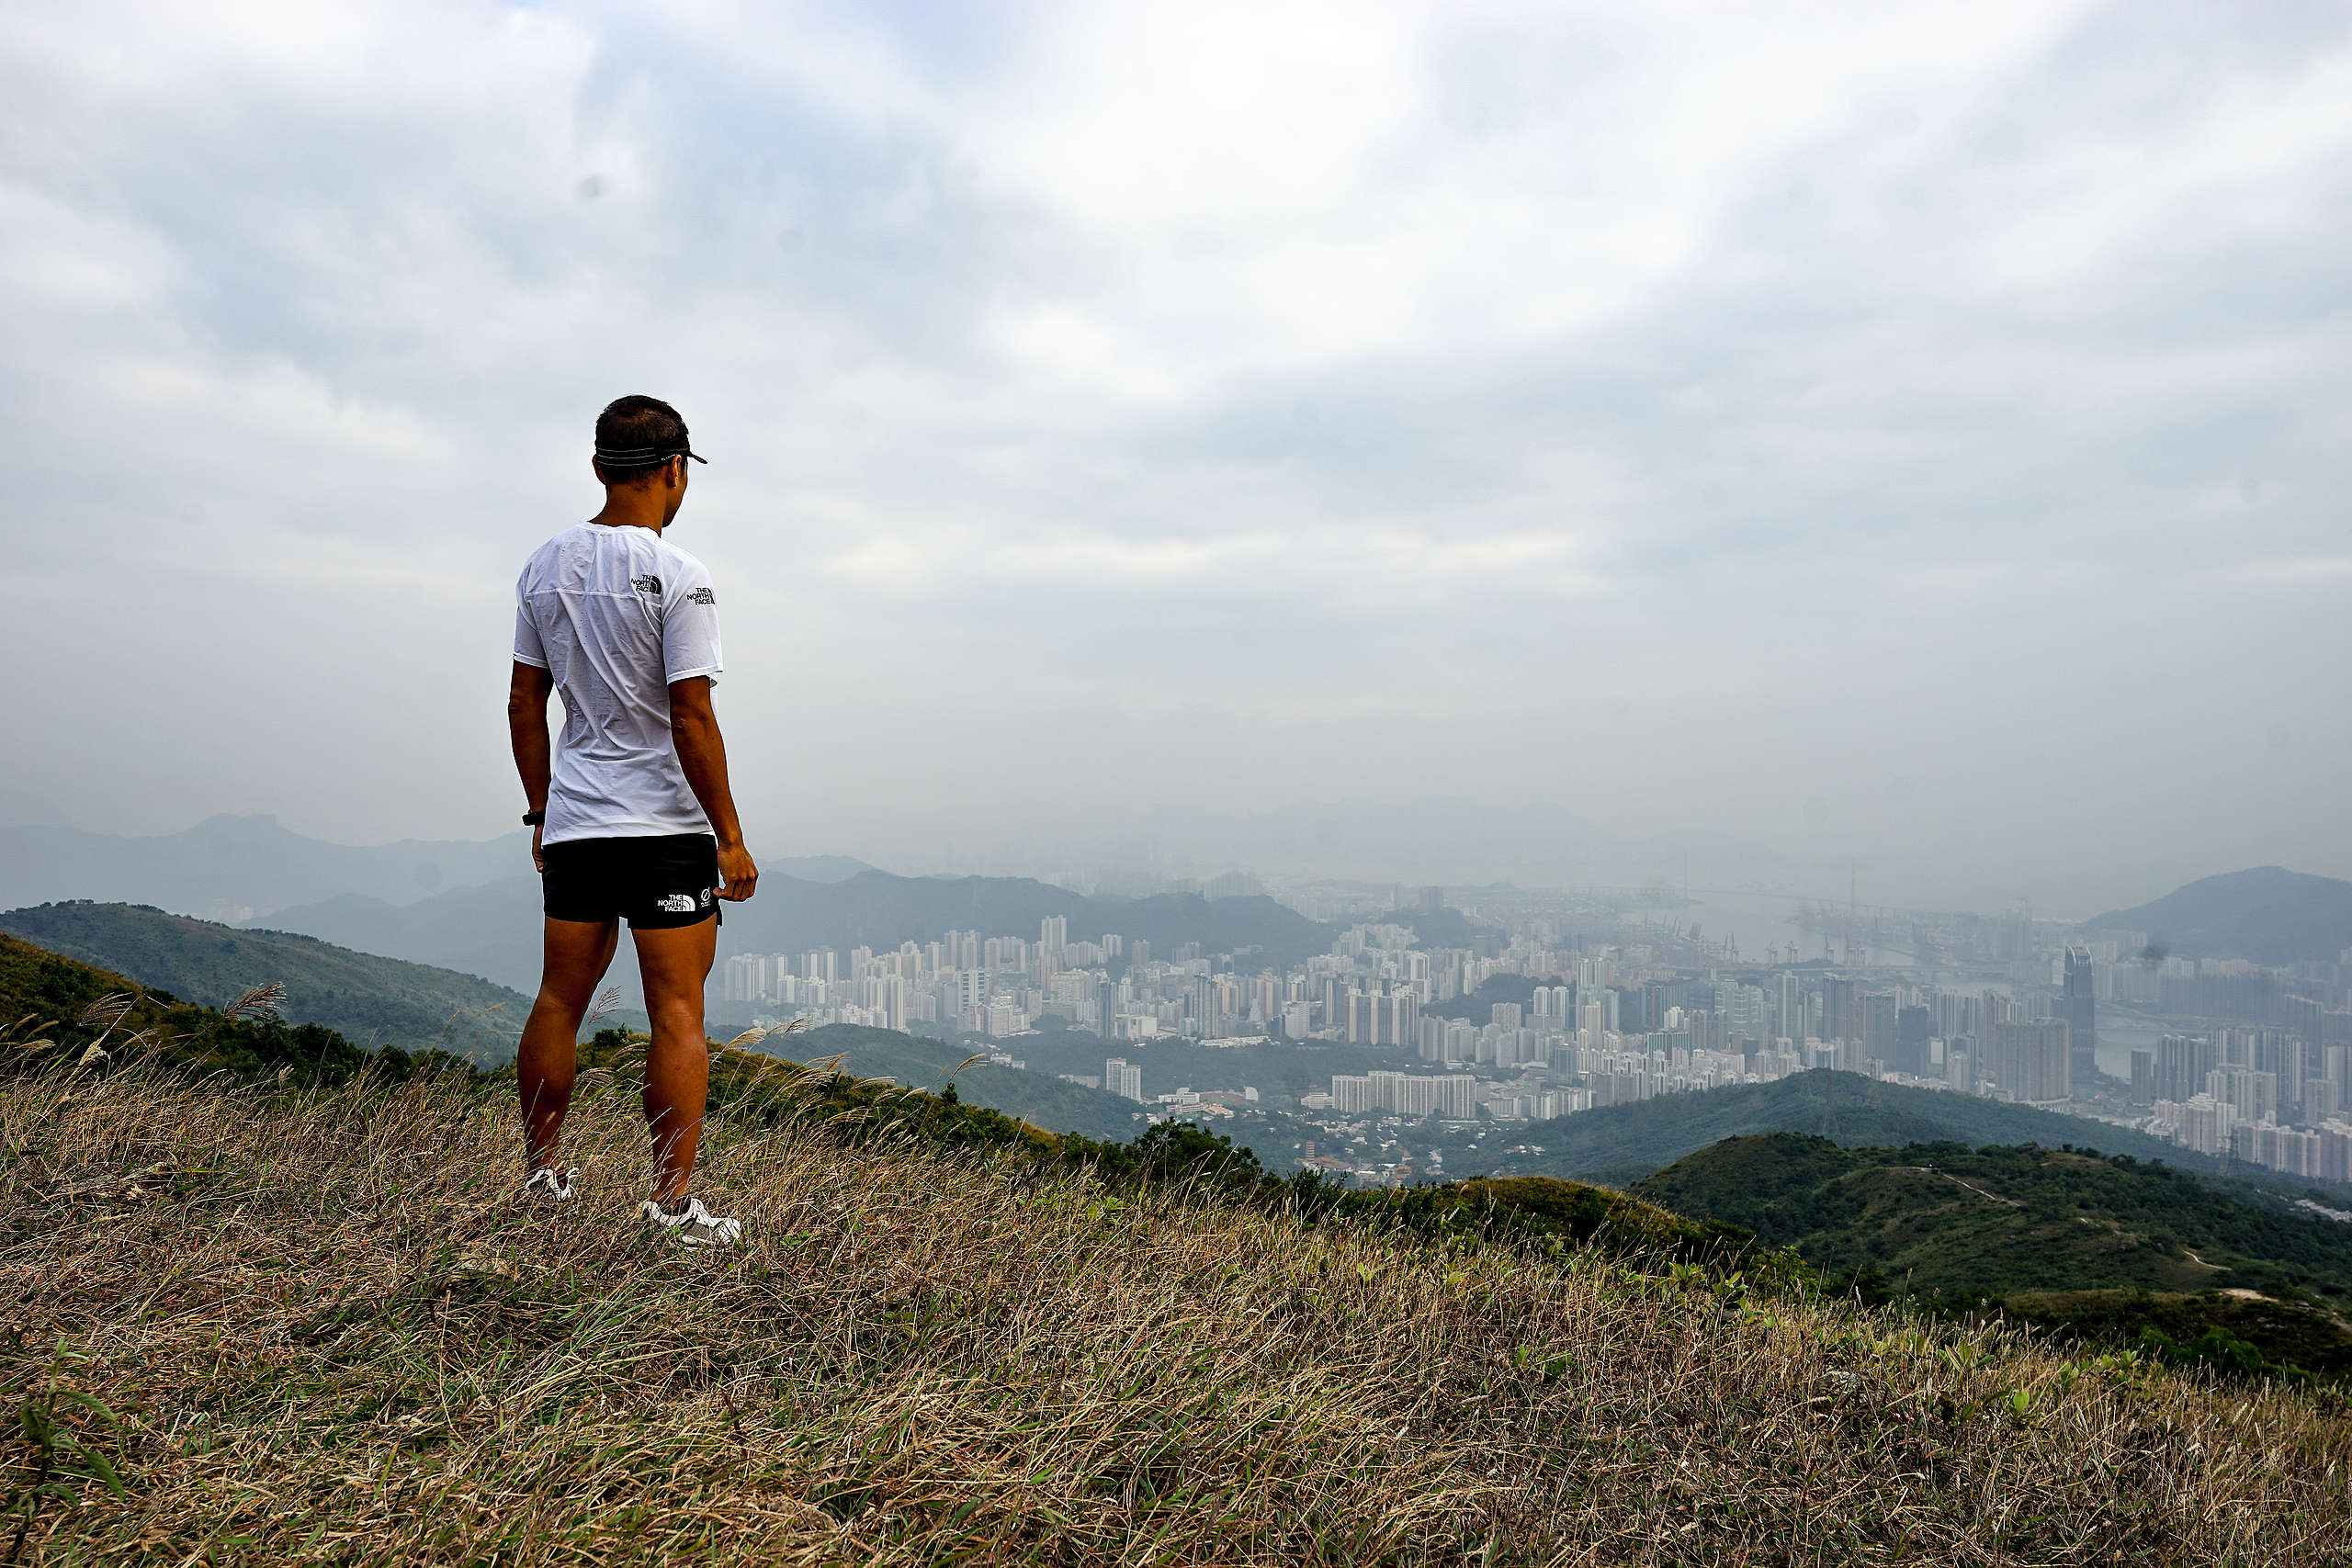 黃浩聰說，山是公平的，無論是誰都要付出努力，方可攀越高山，這是跑山最特別的地方。© Kim Leung / Greenpeace